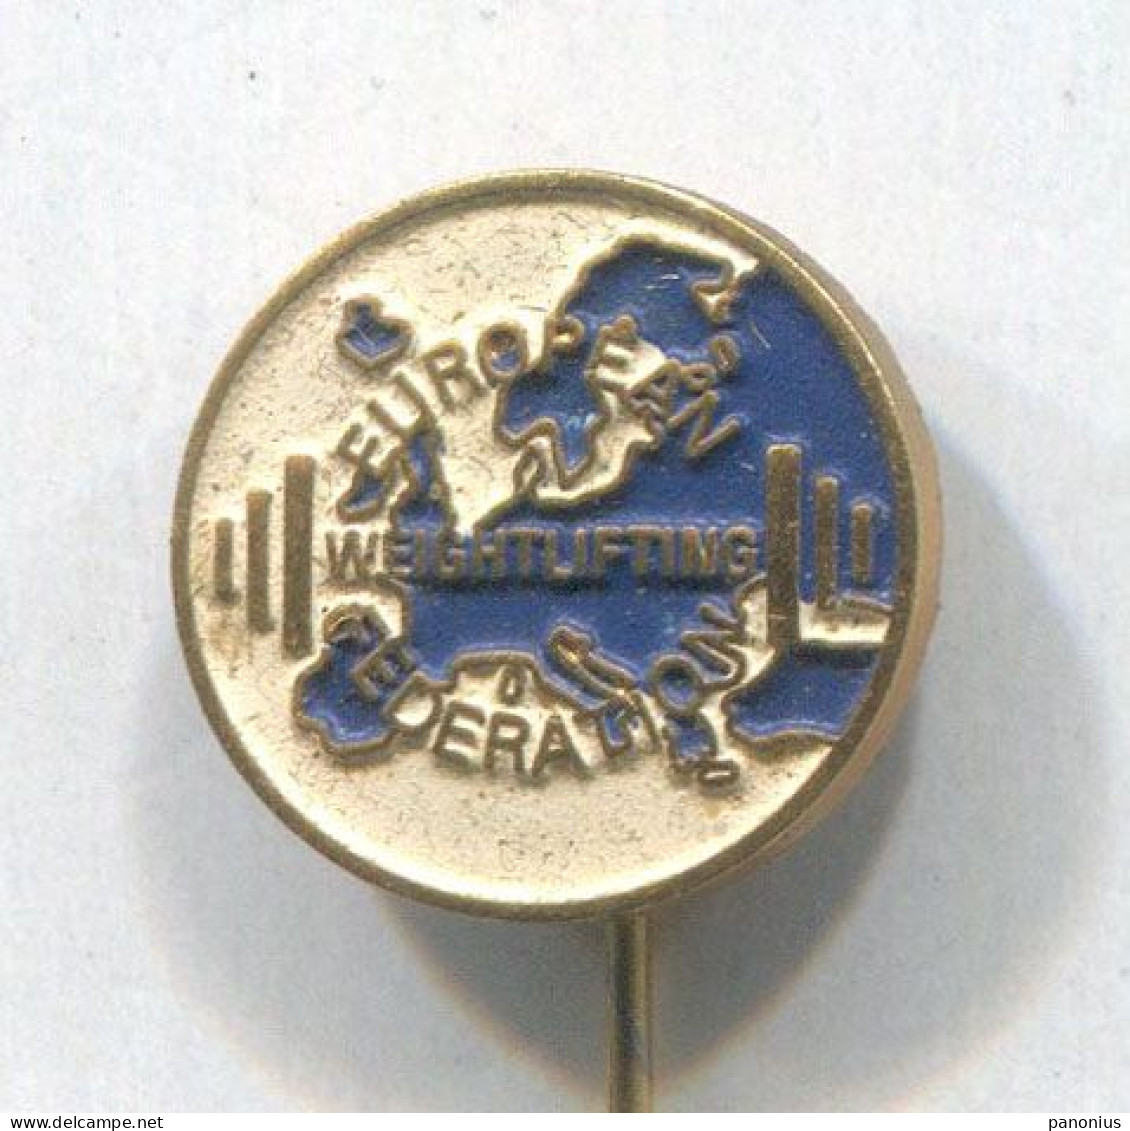 Weightlifting Gewichtheben - European Federation Association, Vintage Pin, Badge, Abzeichen - Haltérophilie